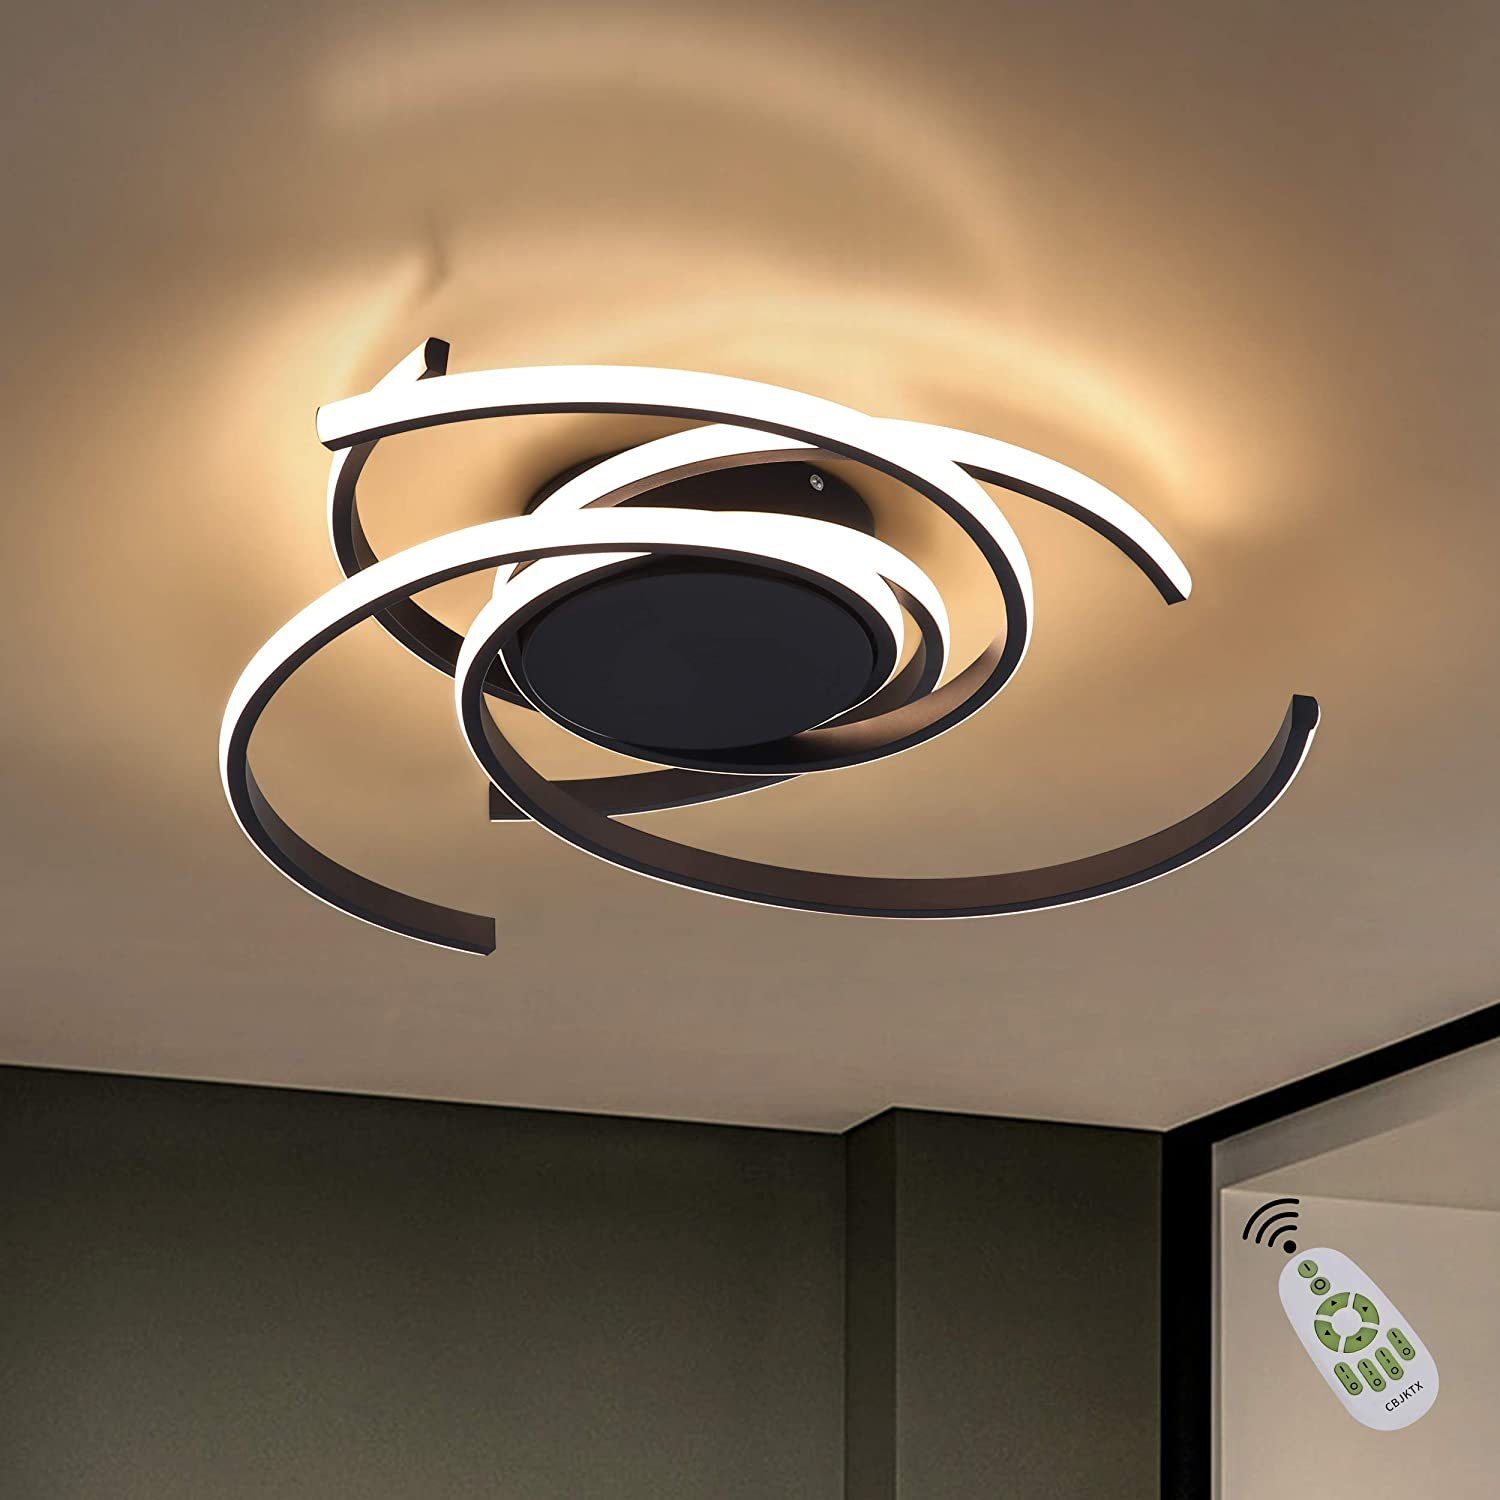 Deckenleuchte LED Deckenlampe Moderne Design Wohnzimmerlampe Beleuchtung Lampe 